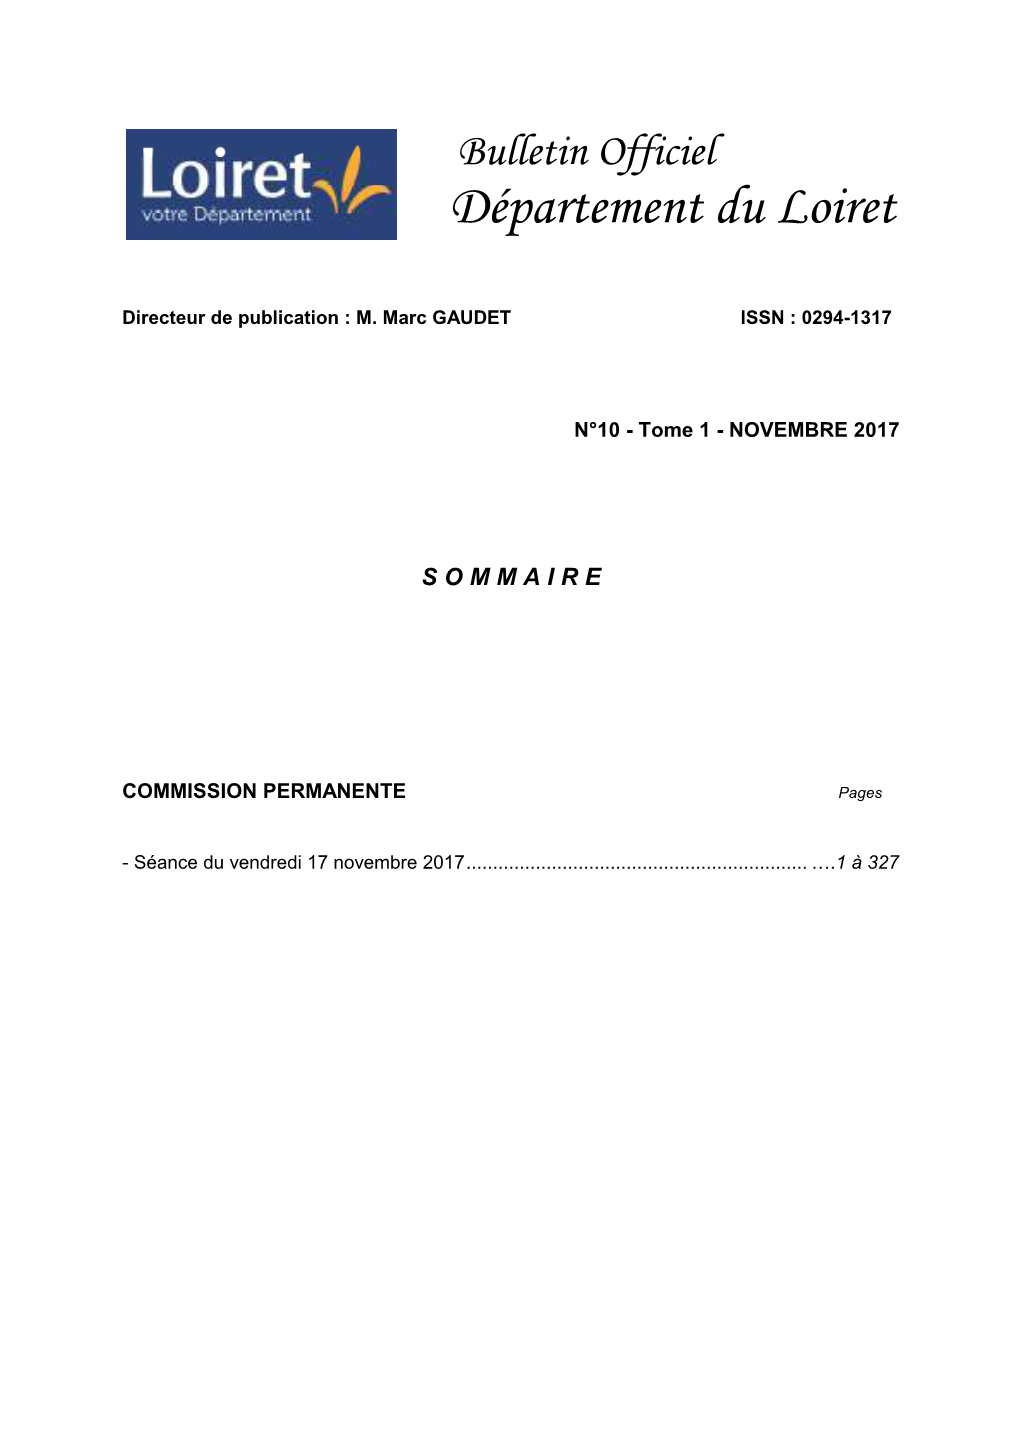 BODL Commission Permanente Du 17